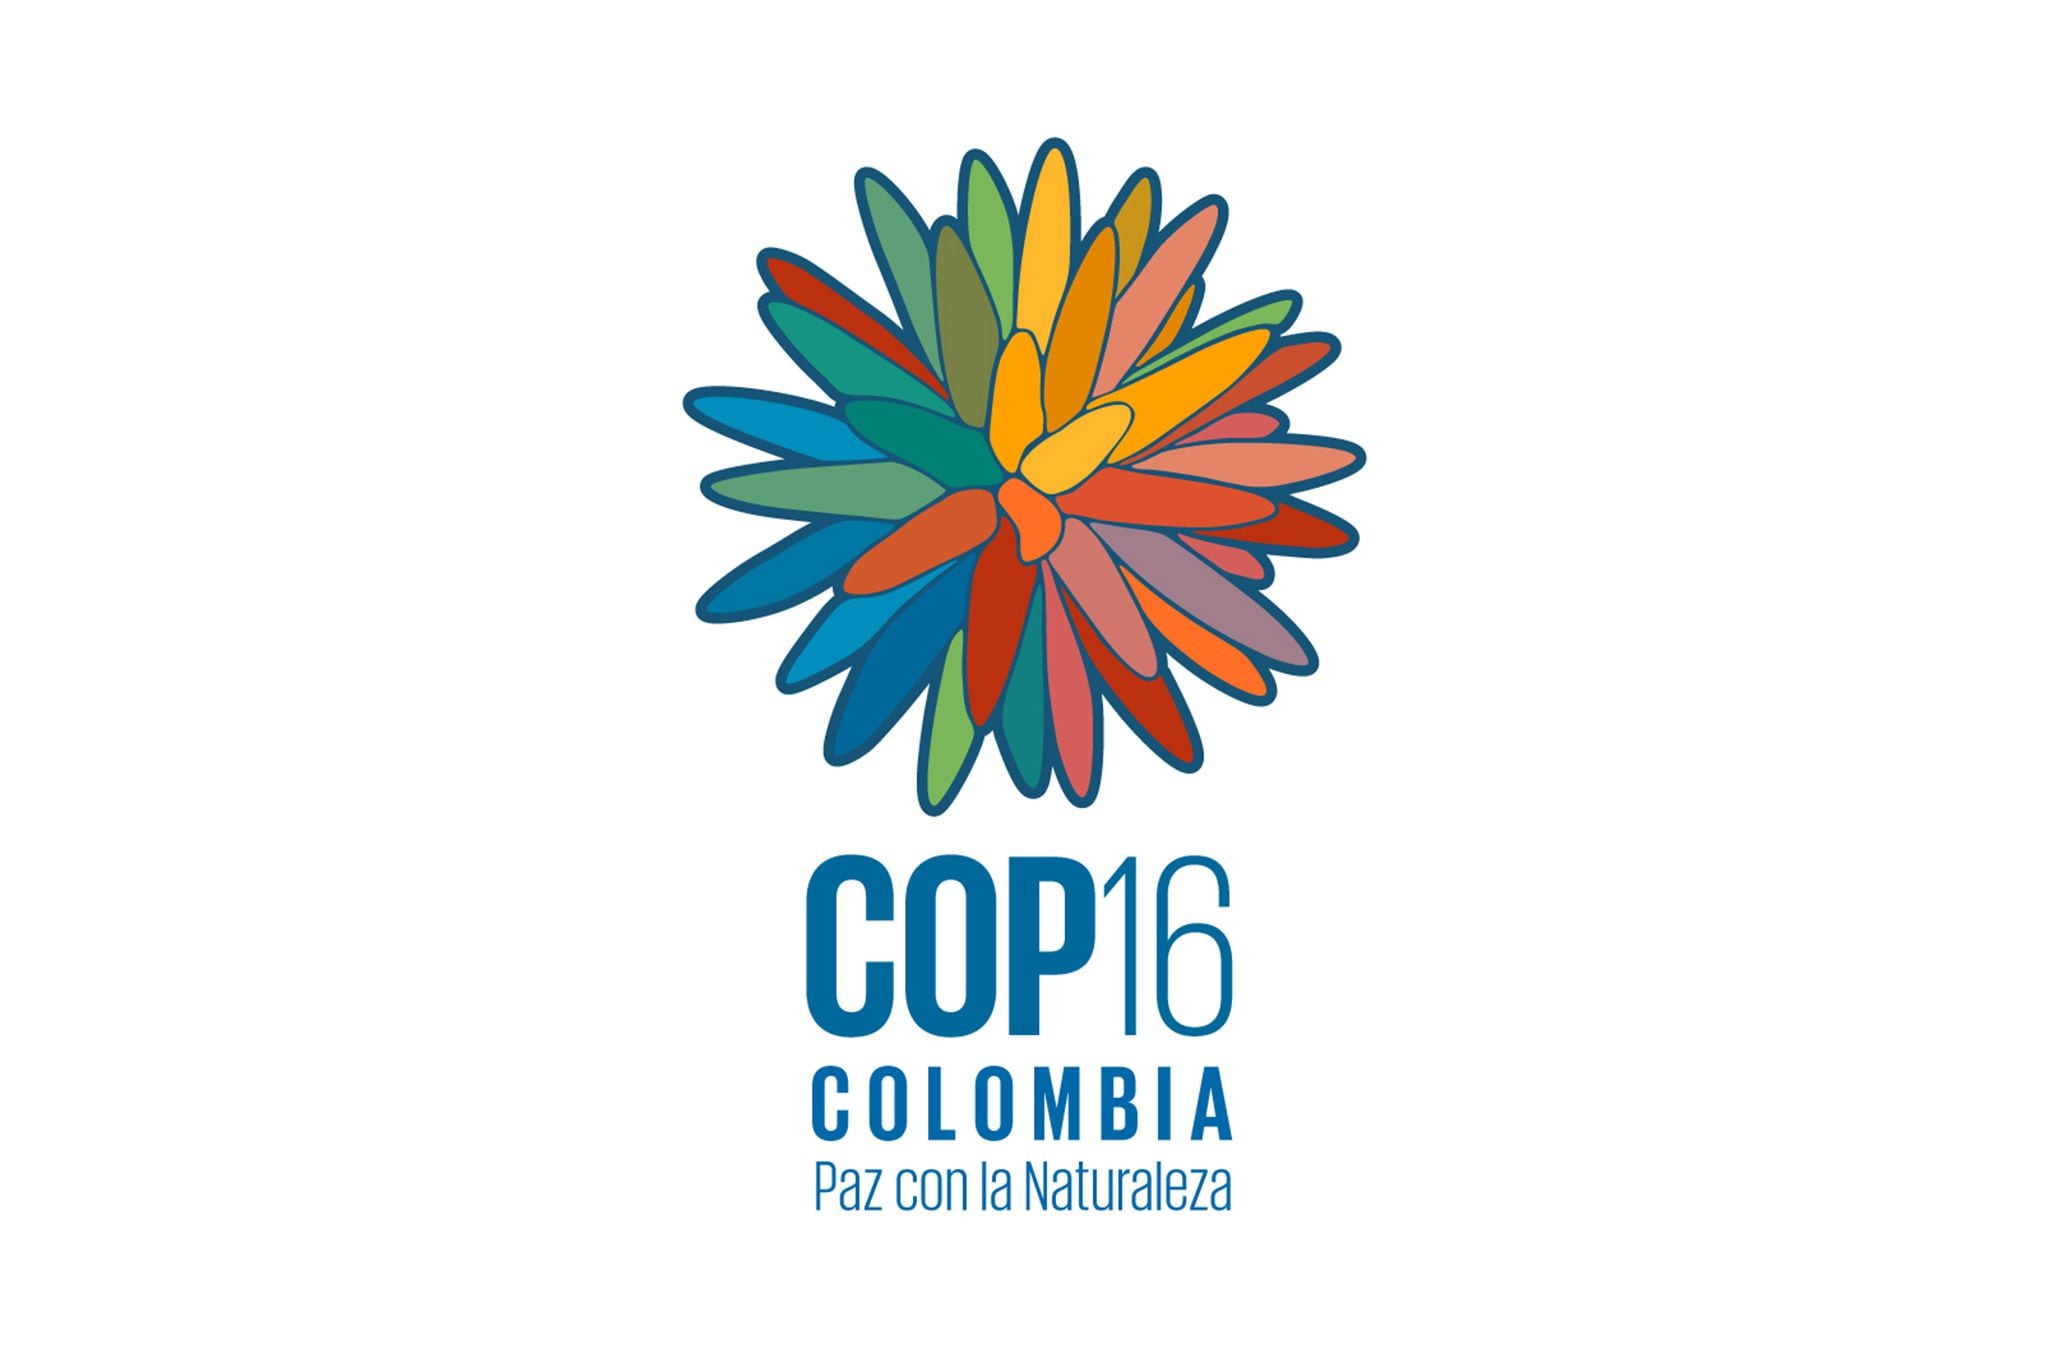 El miércoles 28 de febrero Colombia presentó al mundo la imagen de la COP16 ‘Paz con la Naturaleza’ - crédito Ministerio de Ambiente